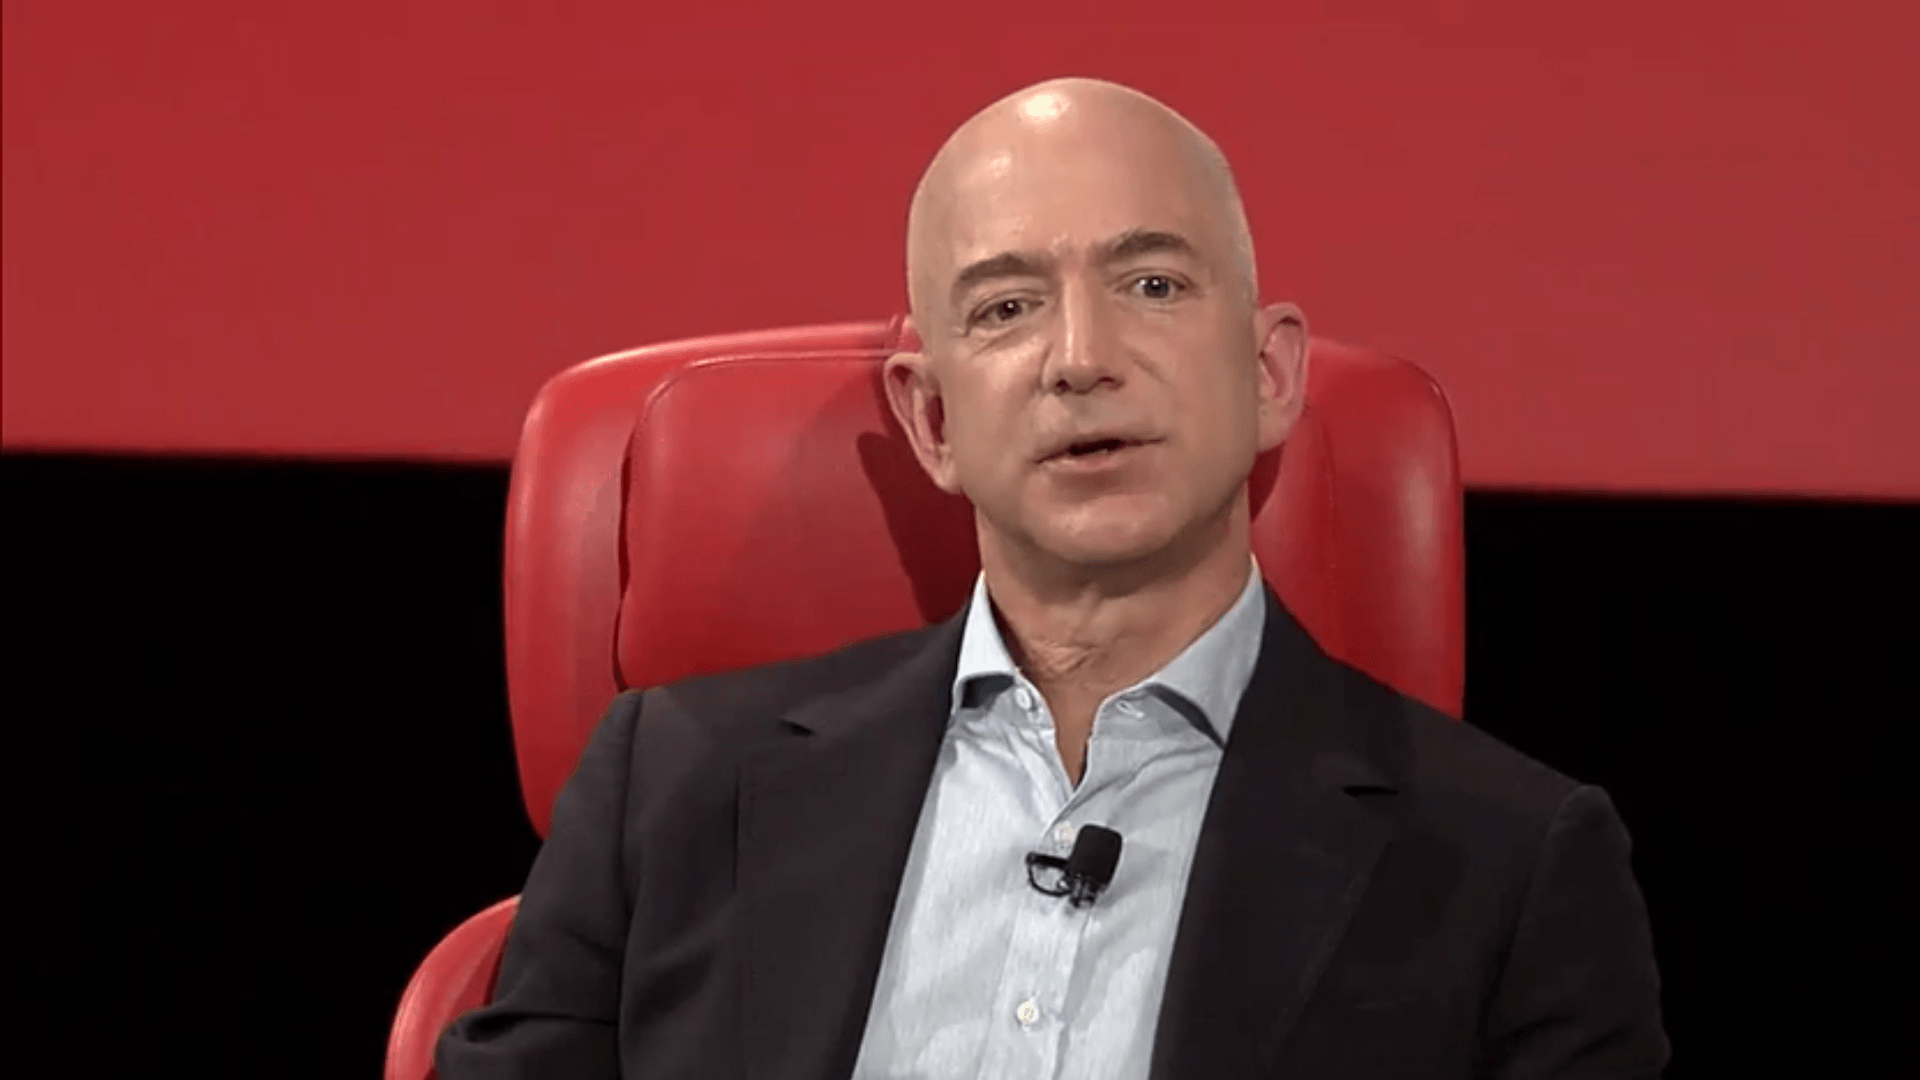 Amazon's Bezos says Trump should be 'glad' of media scrutiny